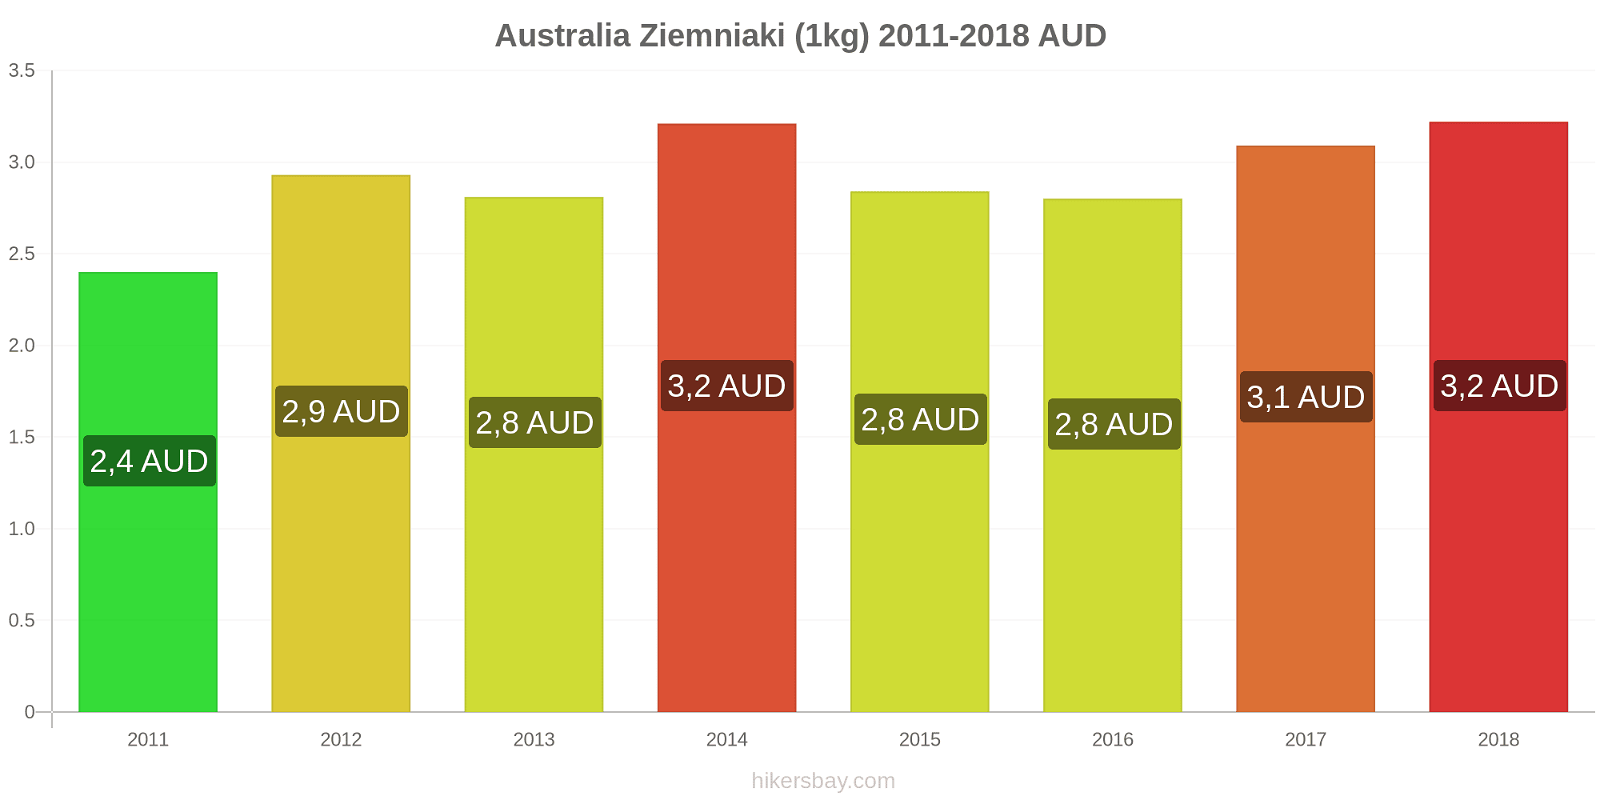 Australia zmiany cen Ziemniaki (1kg) hikersbay.com